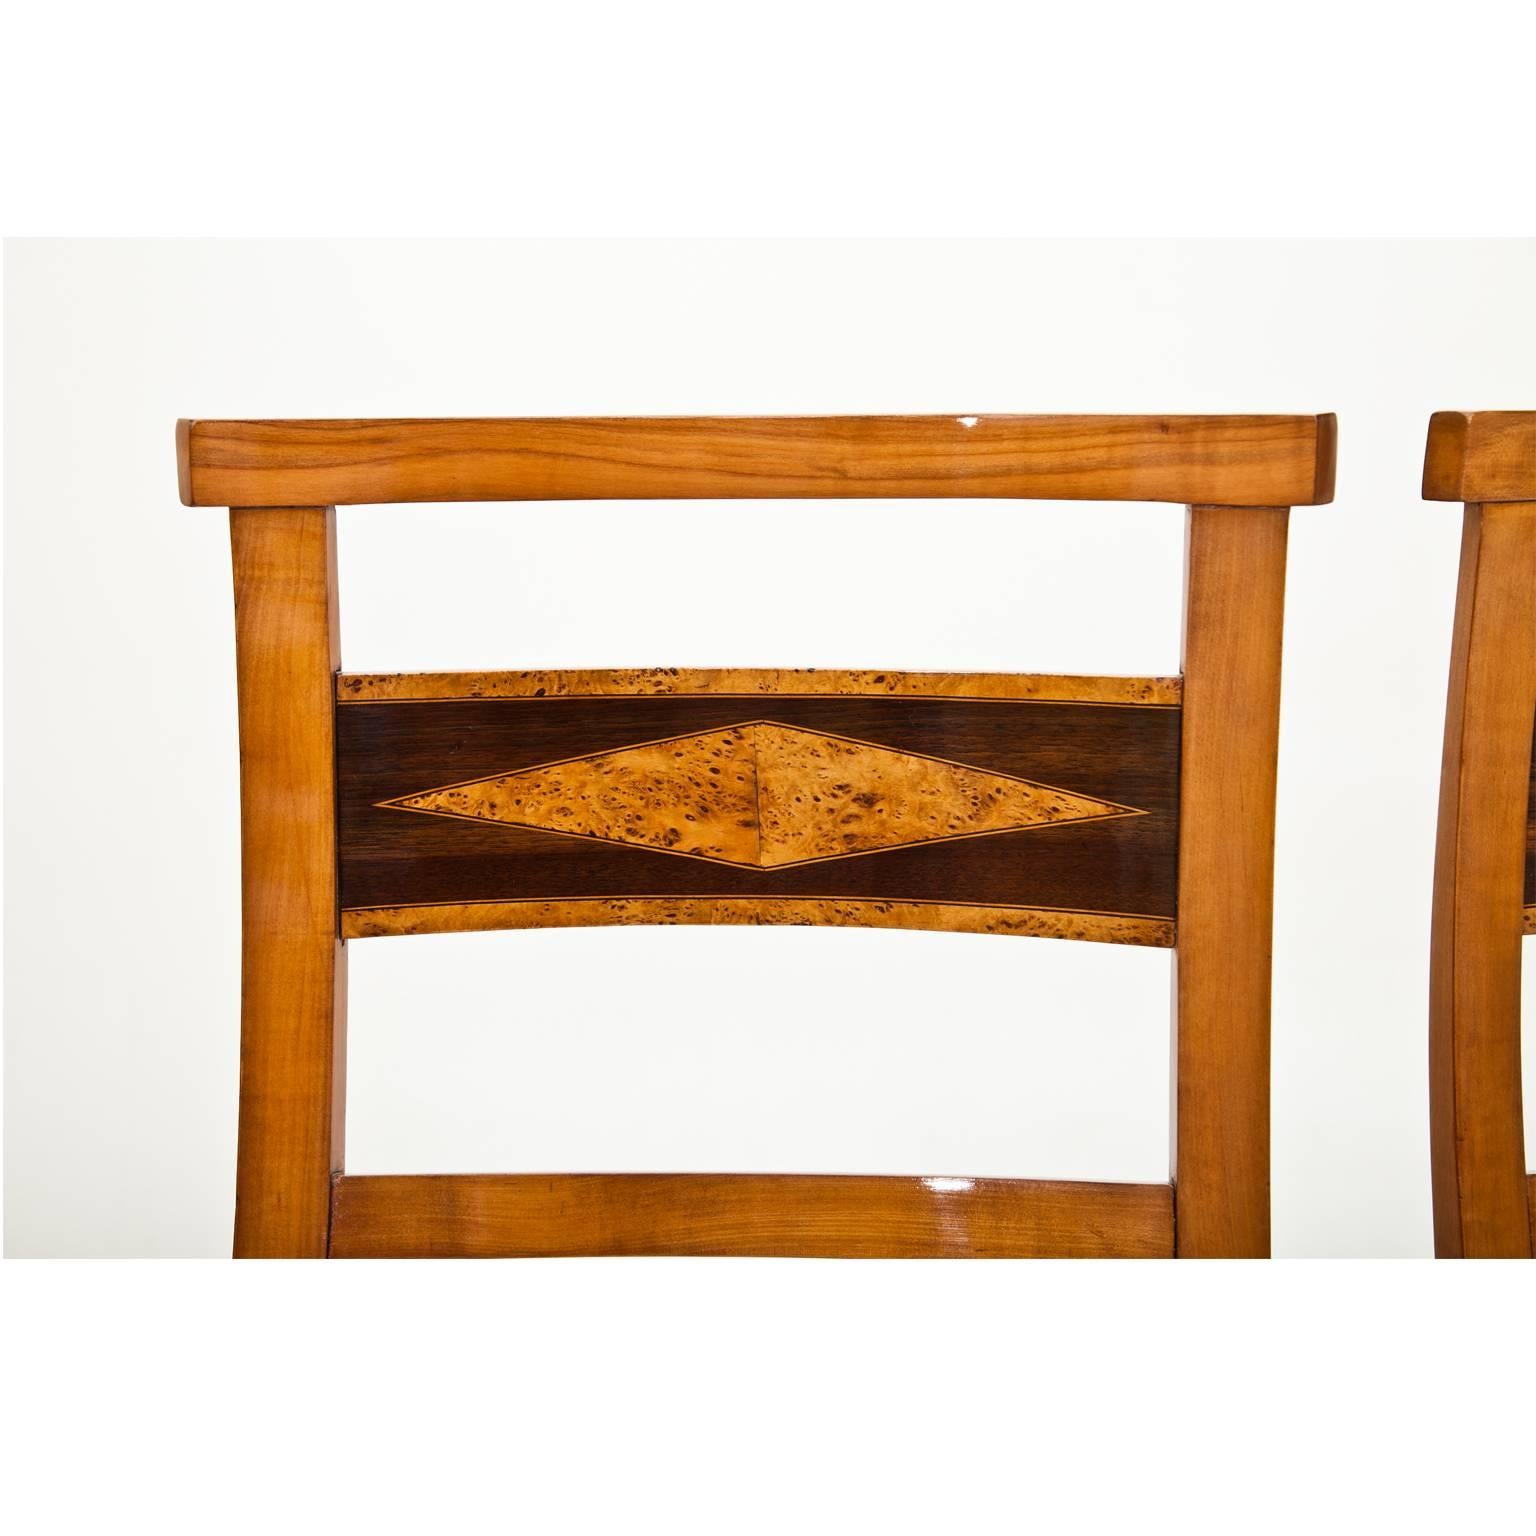 European Biedermeier Chairs, Early 19th Century